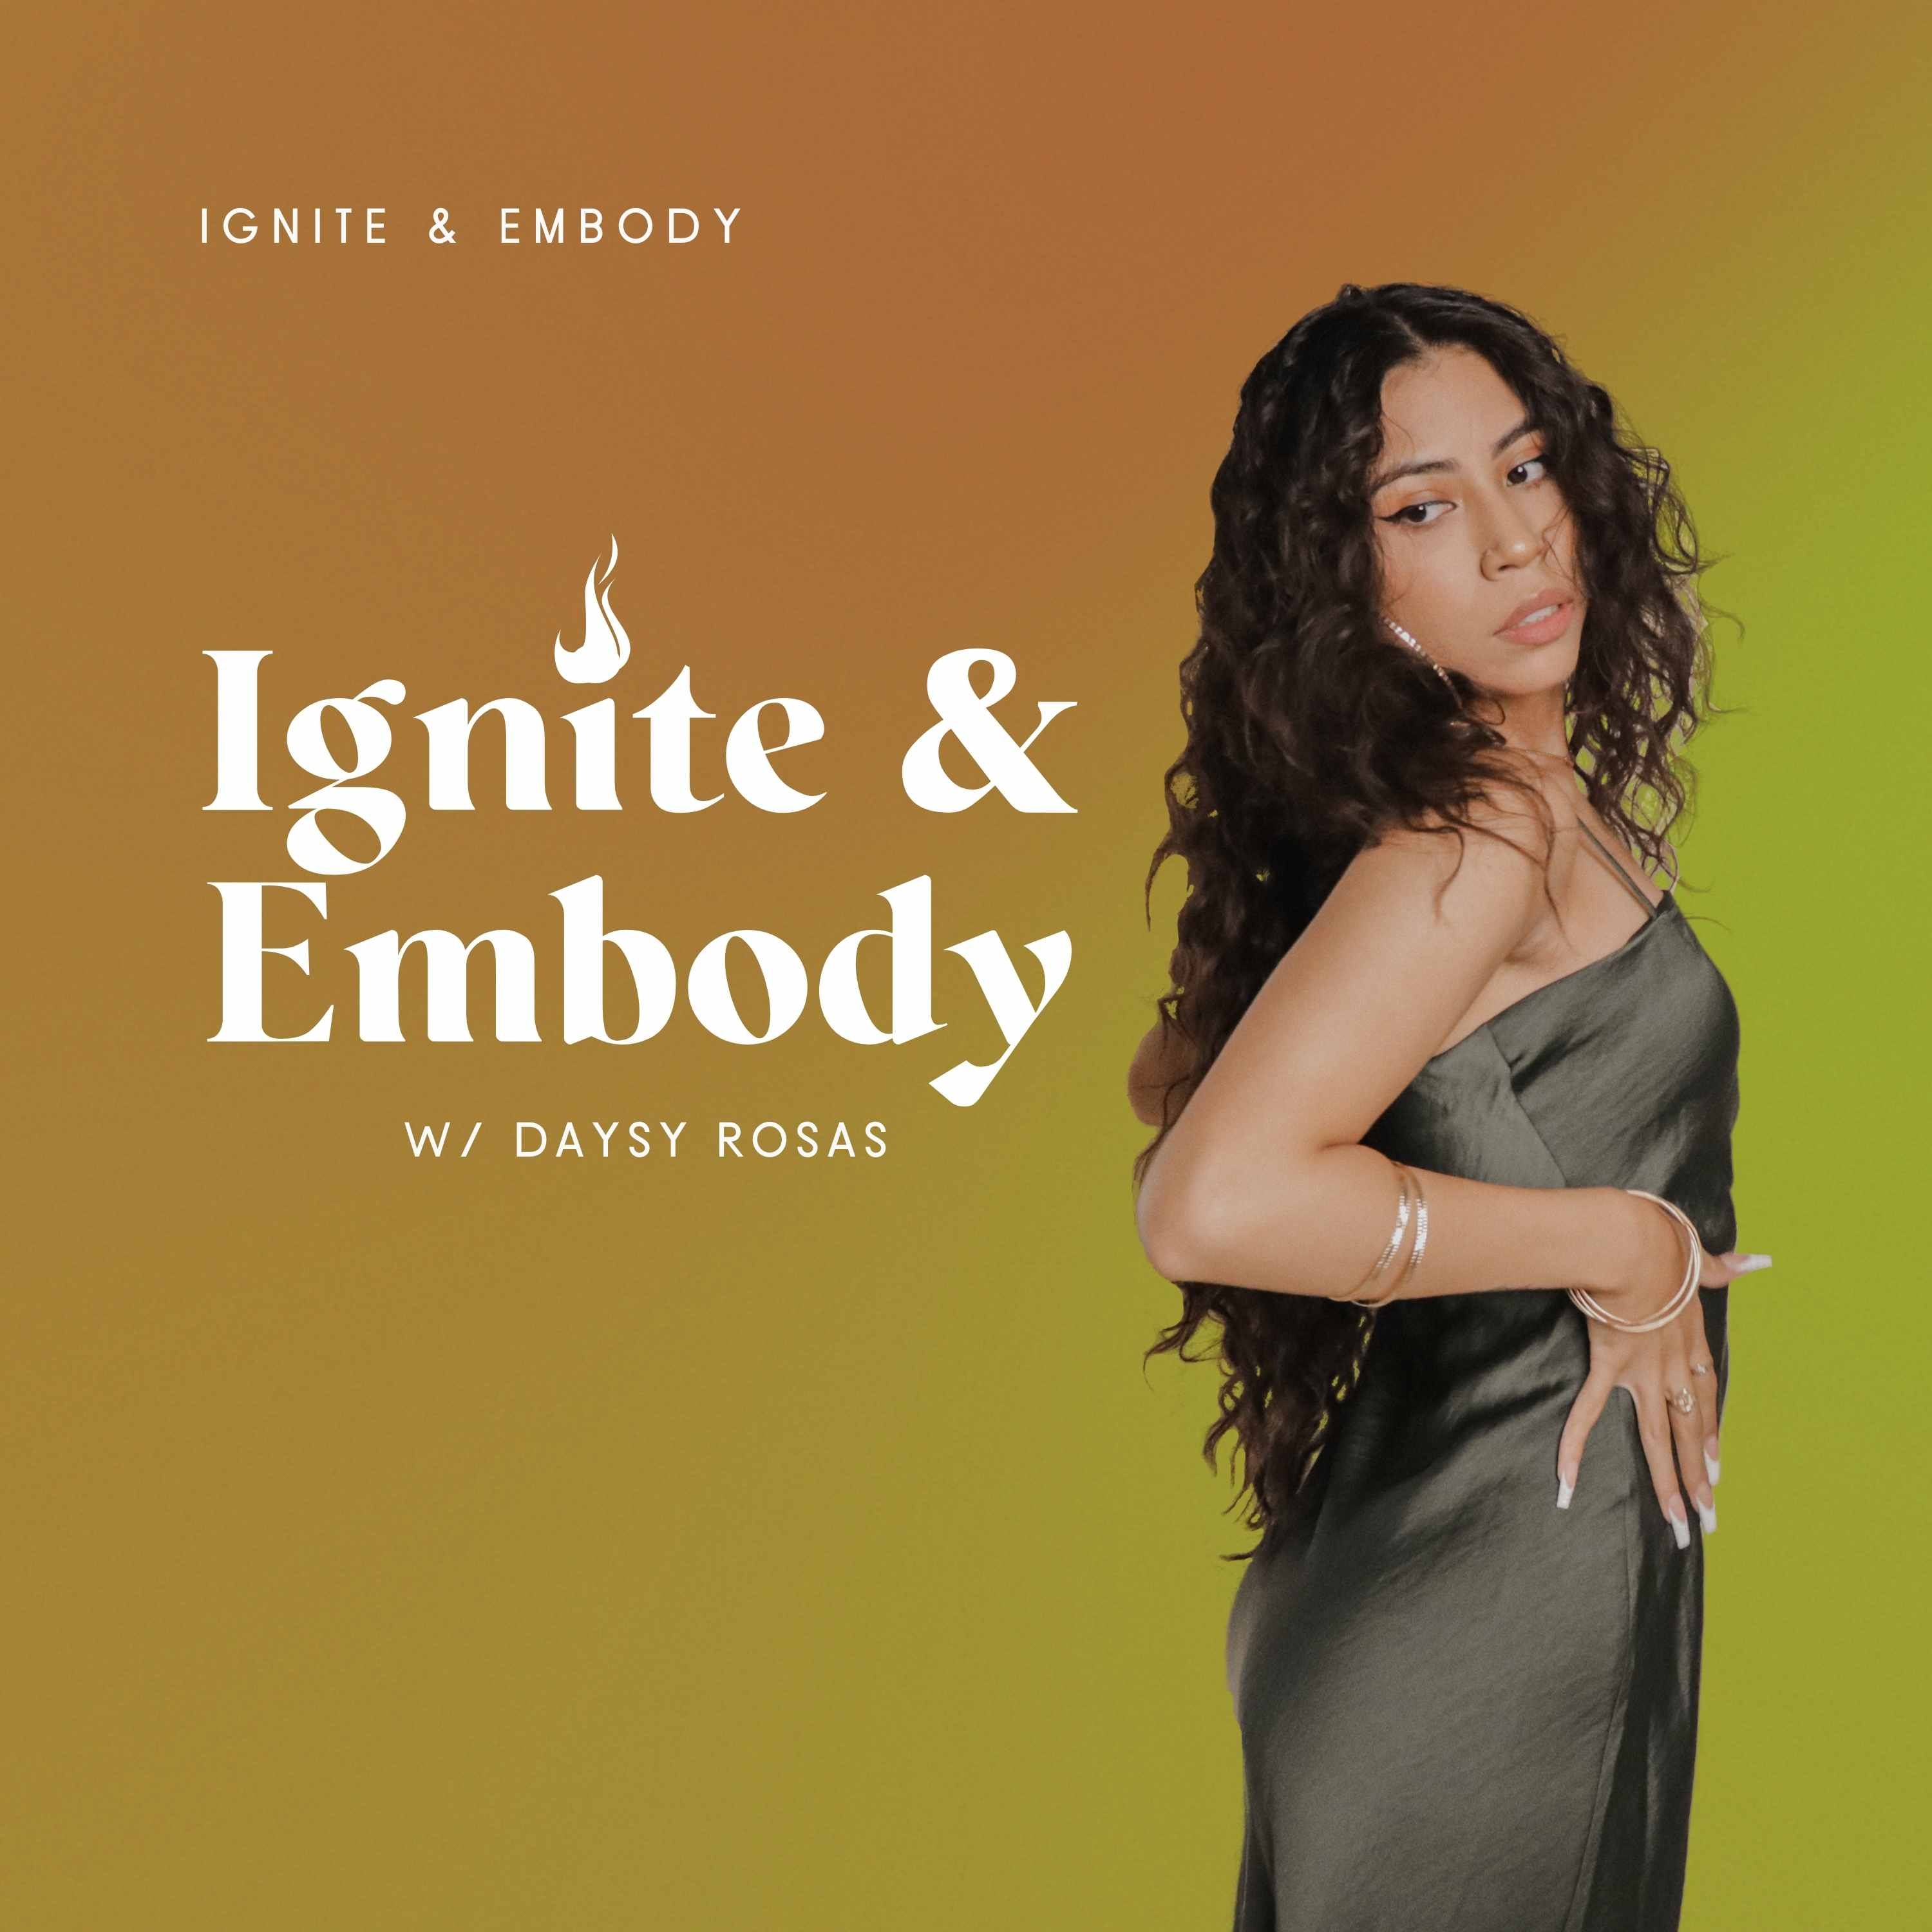 Ignite & Embody